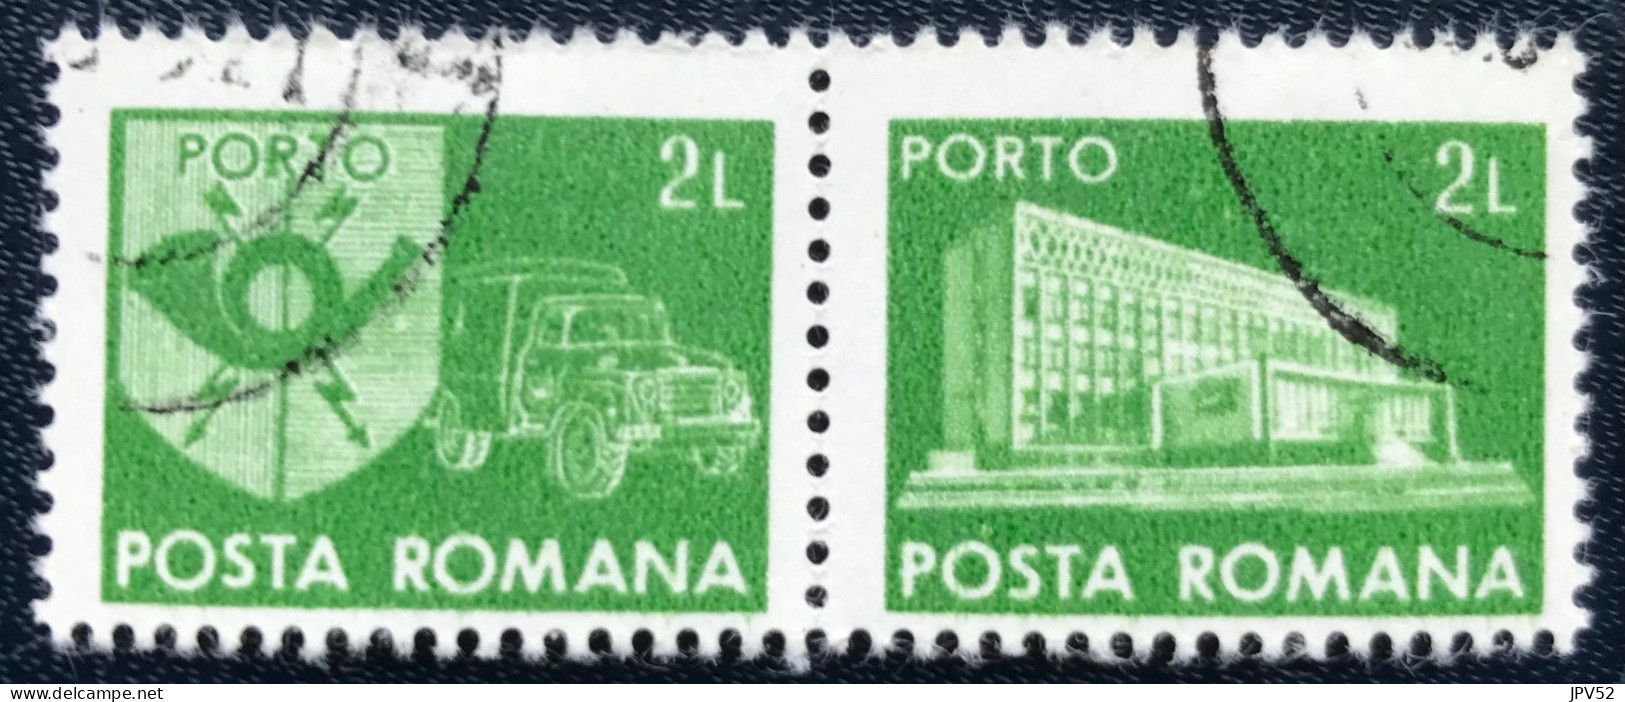 Romana - Roemenië - C14/53 - 1982 - (°)used - Michel 128 - Postkantoor & Postembleem & Postvoertuig - Postage Due